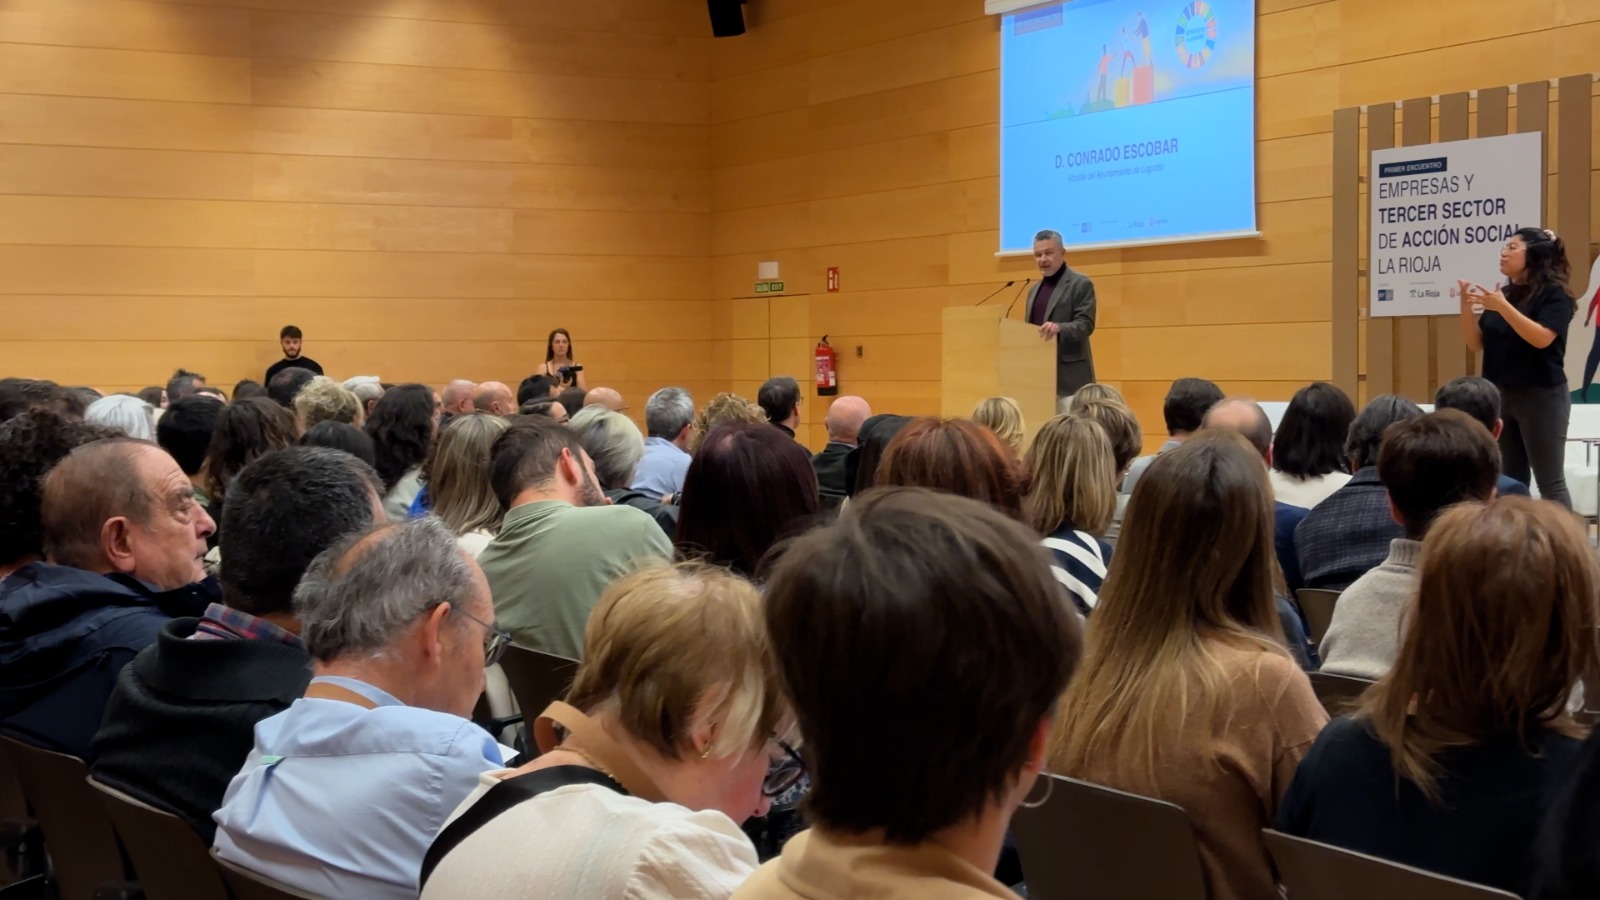 El alcalde de Logroño, Conrado Escobar, en la inauguración del encuentro Empresas y Tercer Sector